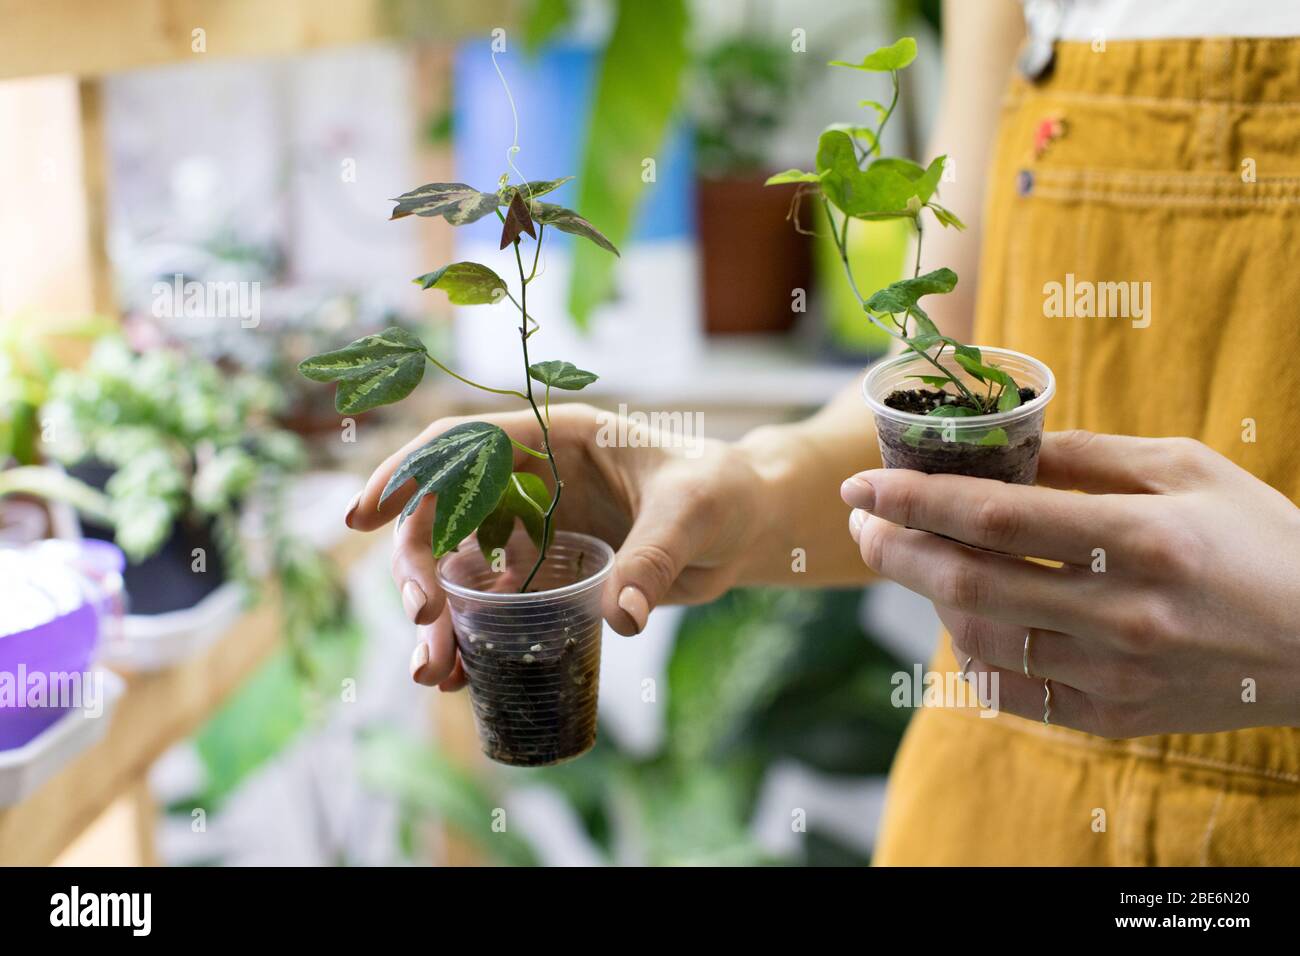 Femme jardinier tenant passiflora germe dans une petite tasse en plastique transparent pour la germination des plantes, plantes de maison enrobées sur fond. Maison jardinage, freelan Banque D'Images